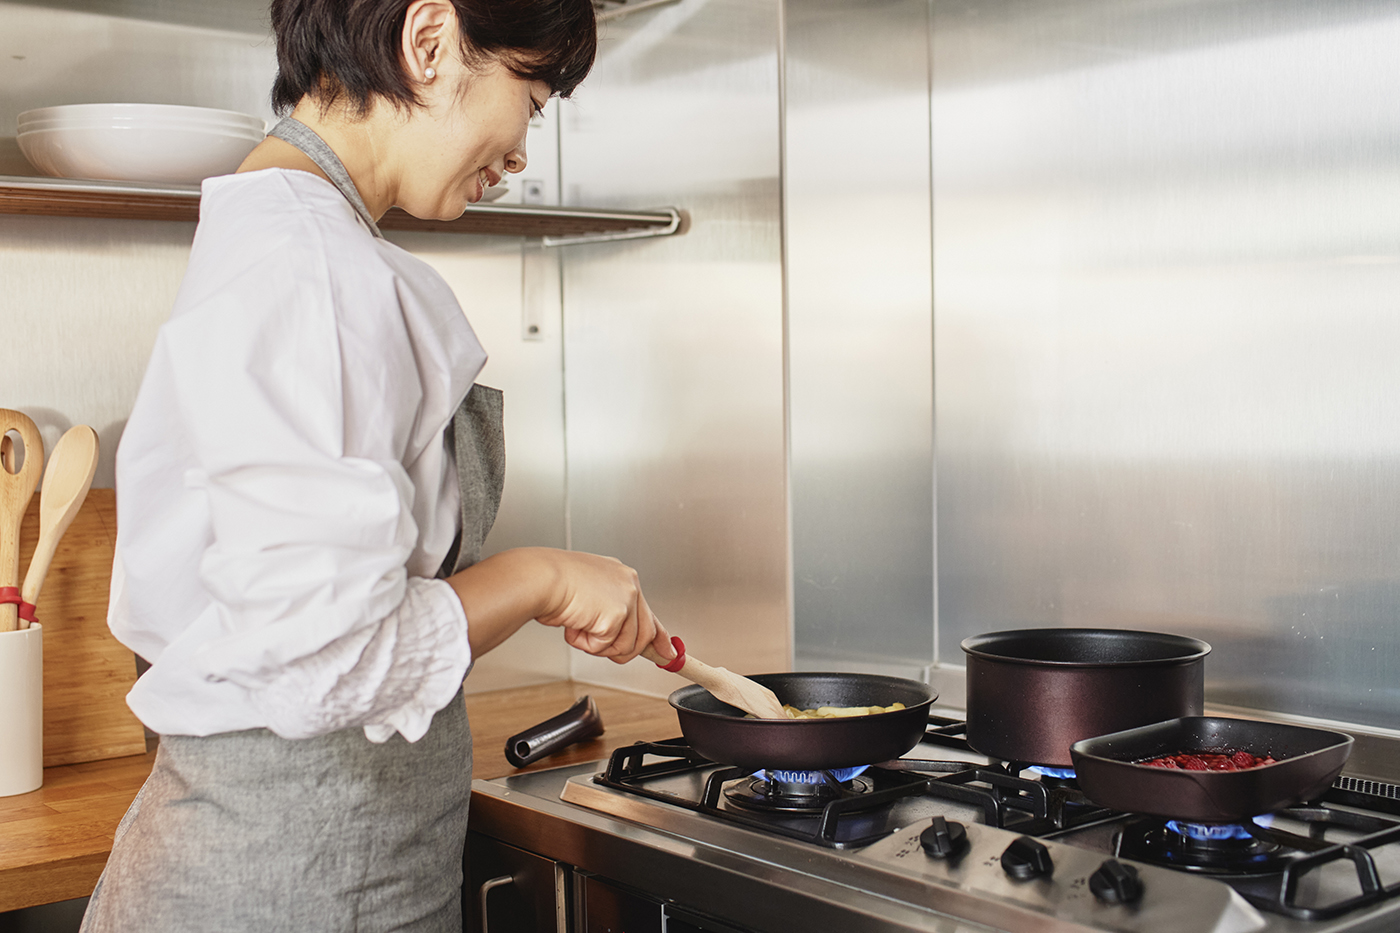 食事作りのストレスを減らしたい！ 料理家・近藤幸子さんが提案する「がんばりすぎない」おうちごはんレシピ